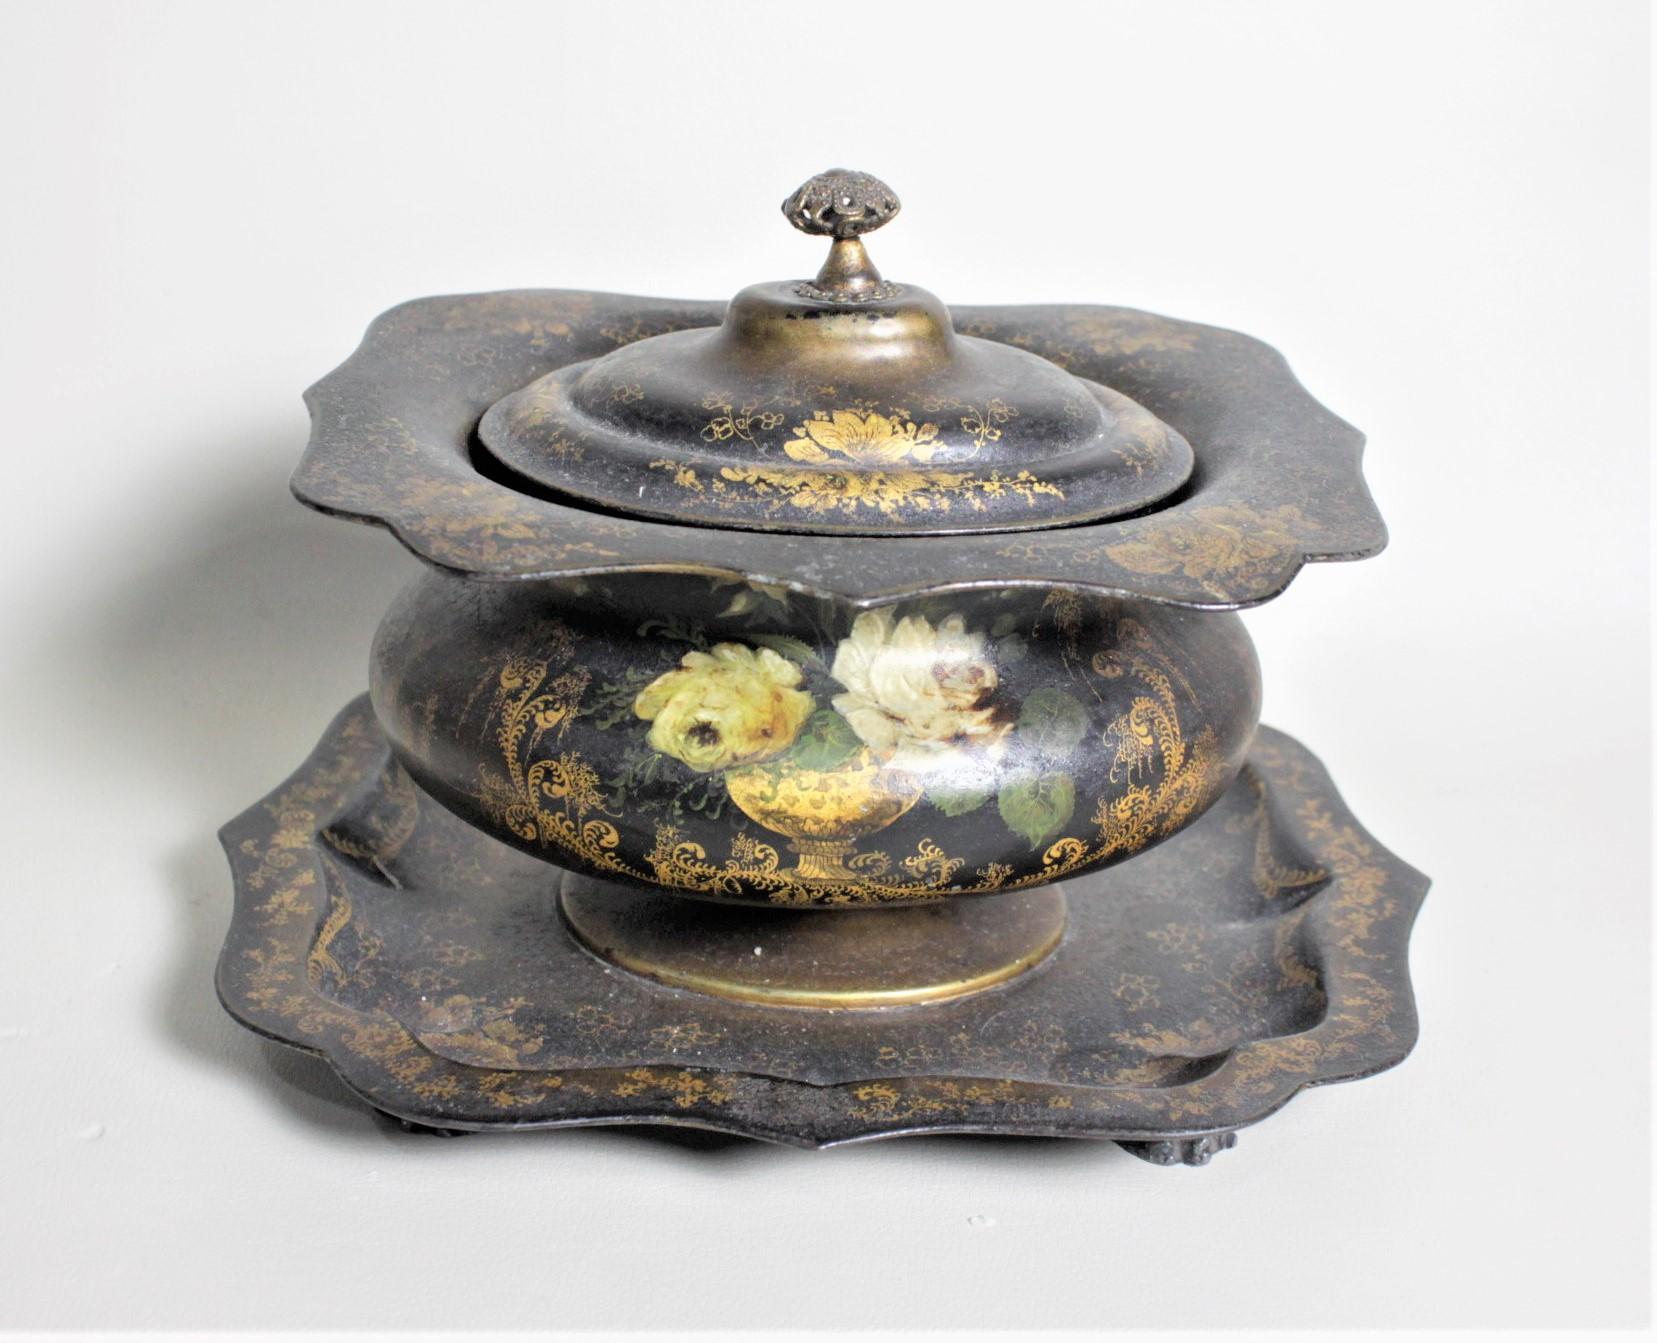 Cette boîte à thé antique en faïence anglaise date d'environ 1820 et est réalisée dans le style Regency de l'époque. Cette boîte à thé est fabriquée en fer-blanc avec un poids en fonte qui sert à comprimer le thé. Le corps du caddy a la forme d'un